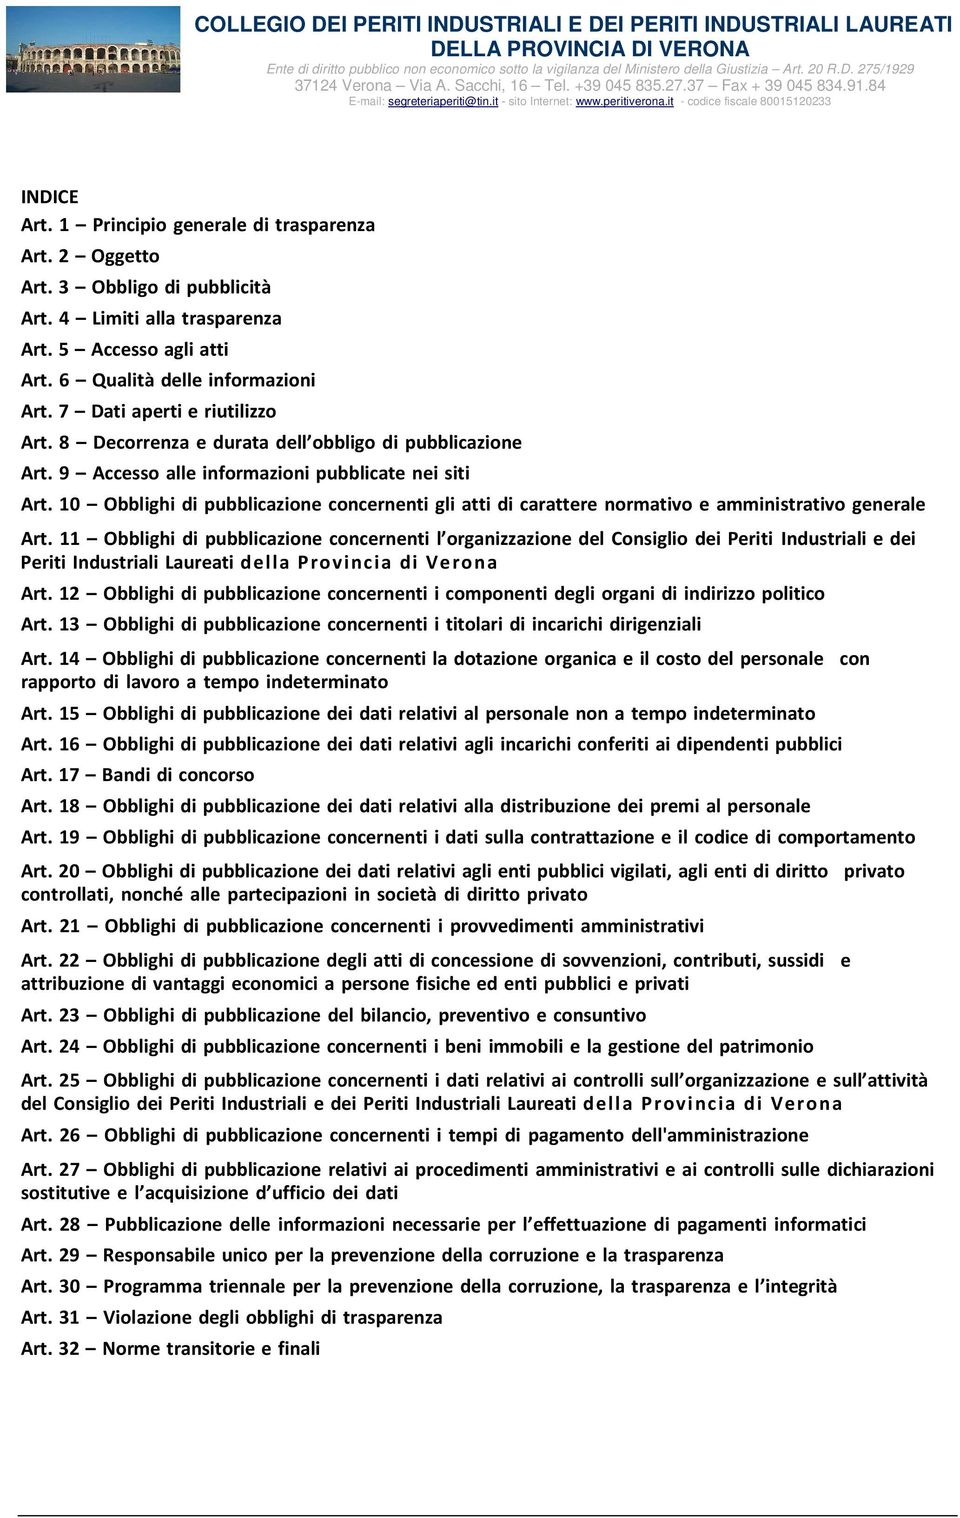 10 Obblighi di pubblicazione concernenti gli atti di carattere normativo e amministrativo generale Art.